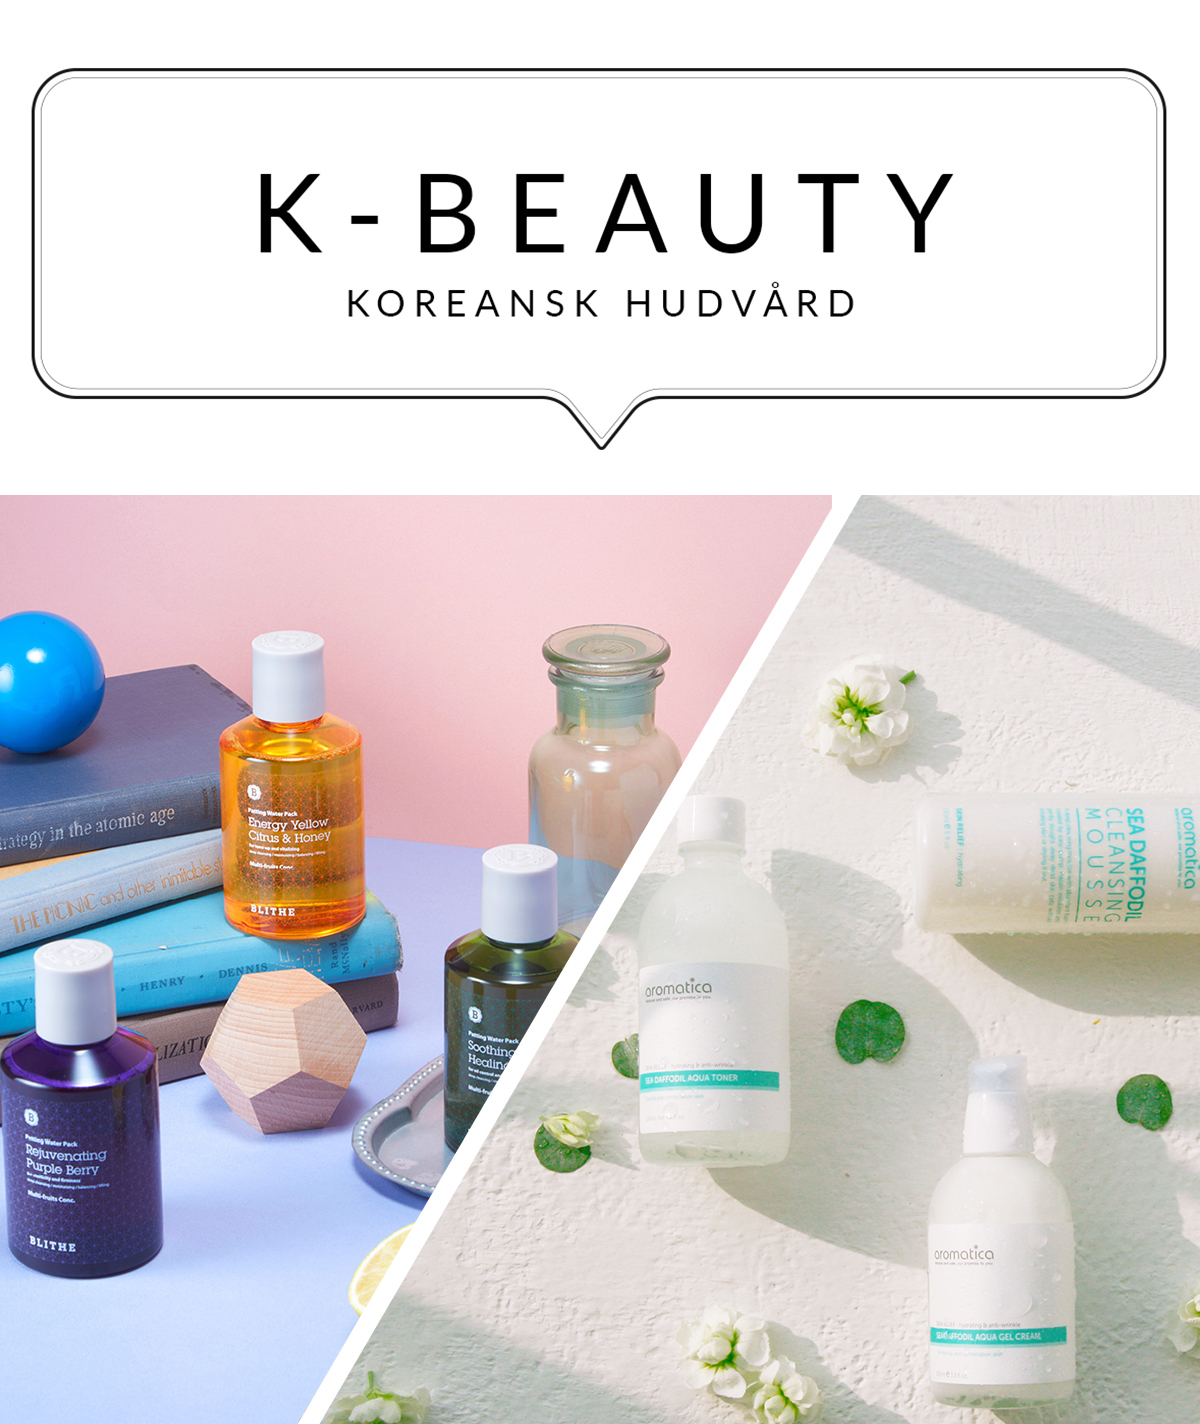 Premiär för Koreansk skönhet på Hudoteket.se!